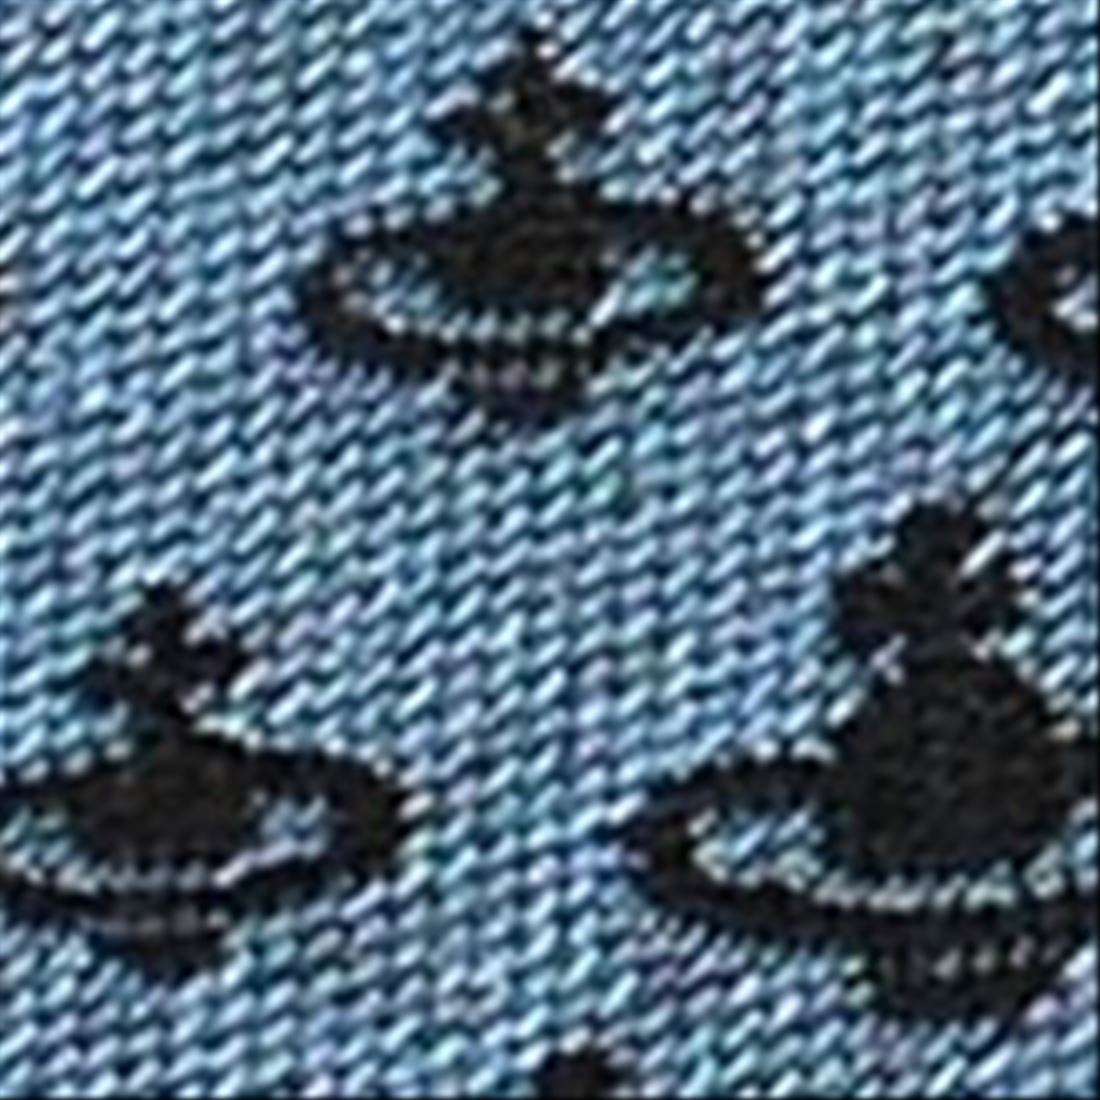  Vivienne Westwood галстук AW2020 модель 11542 K201-LIGHT BLUE_slim 7cm тонкий мелкий рисунок o-b Logo голубой серия 